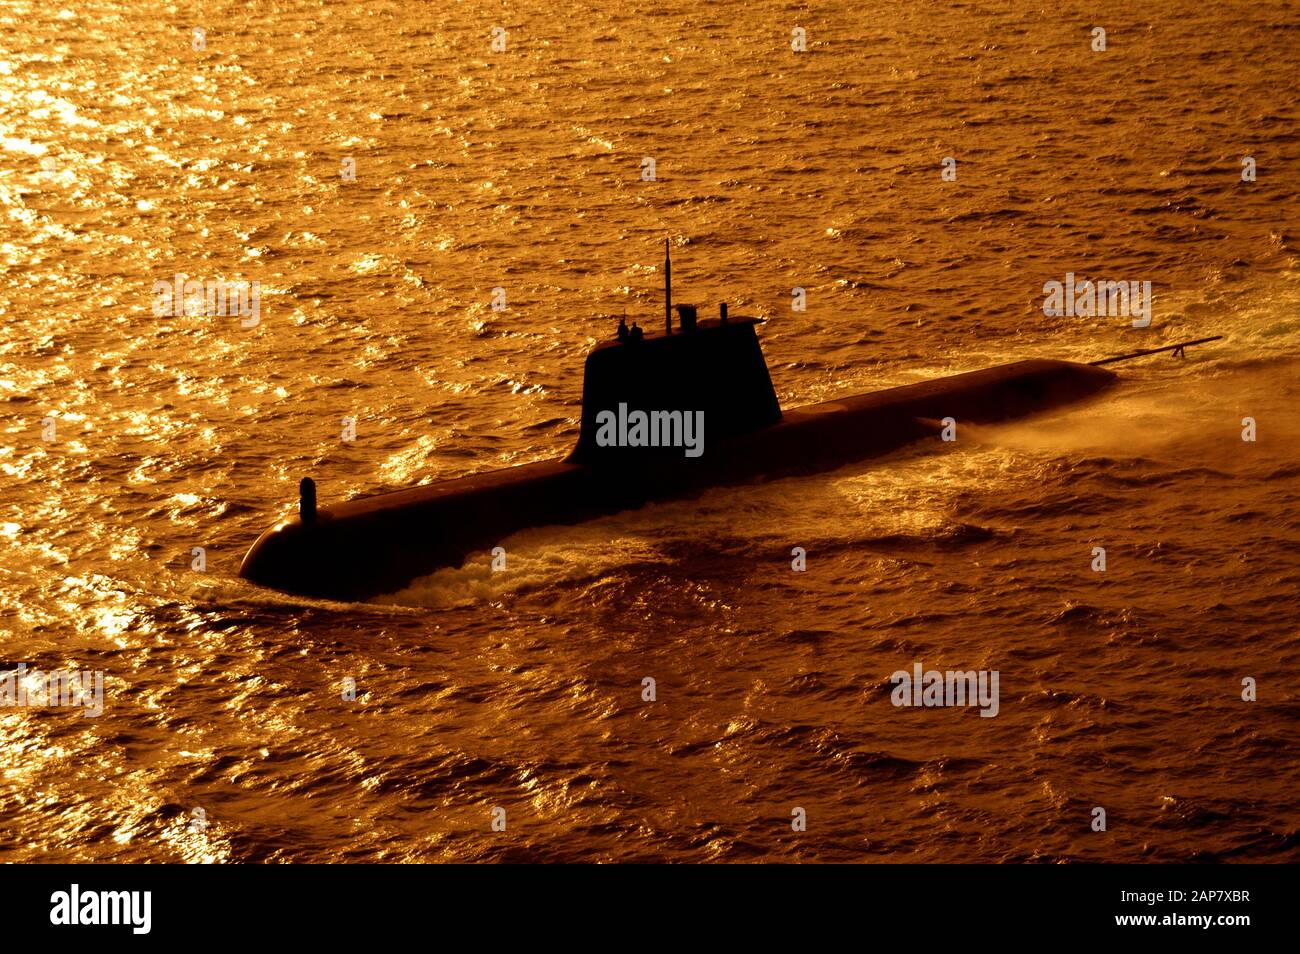 Vue aérienne du sous-marin électrique diesel de classe Collins de la marine anaustralienne en mer. Banque D'Images